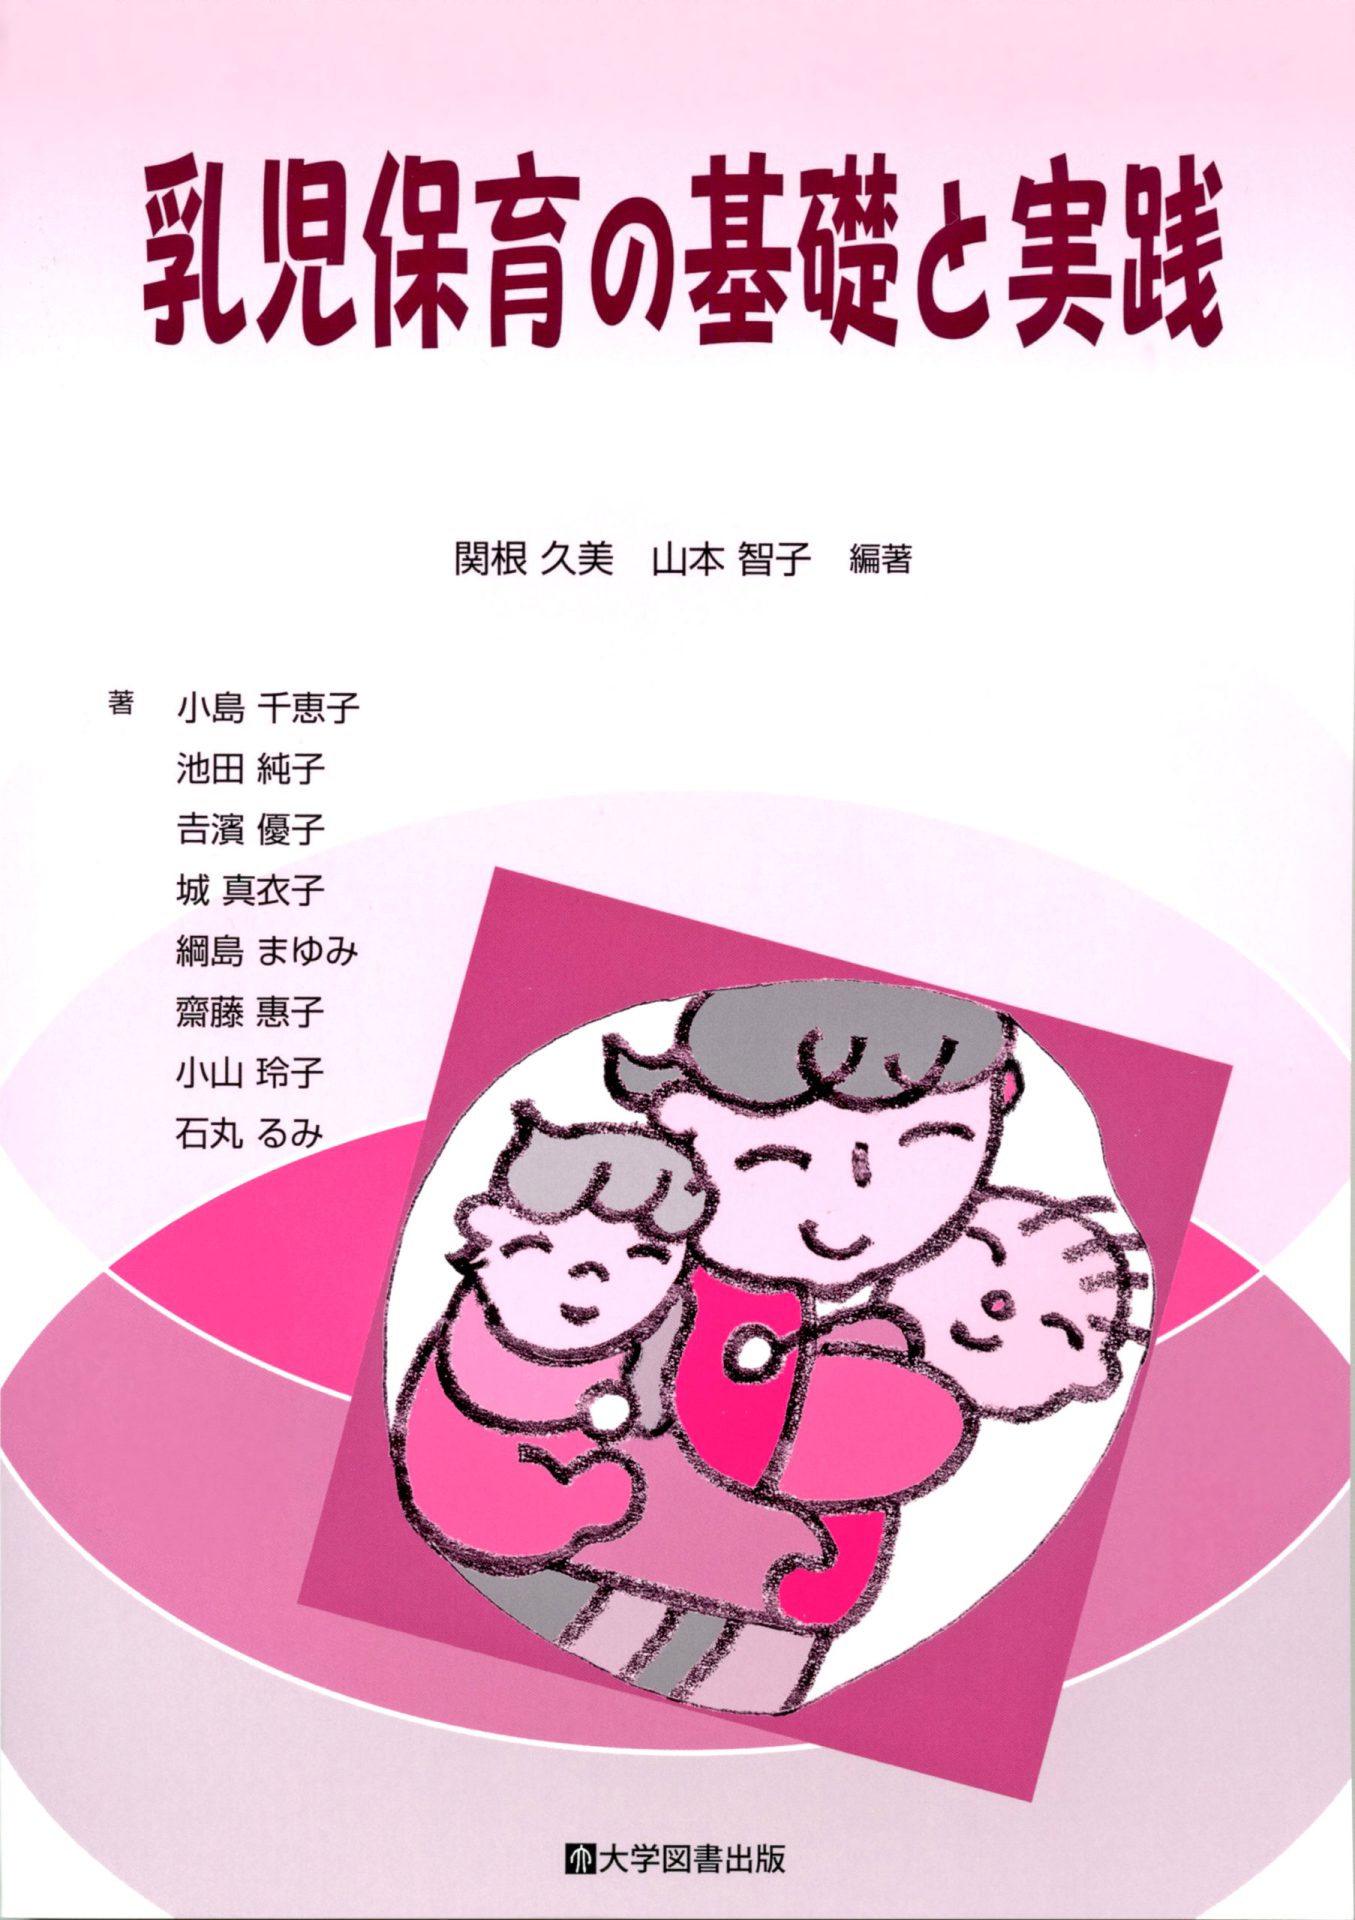 乳児保育の基礎と実践 | 教育関係図書の株式会社大学図書出版